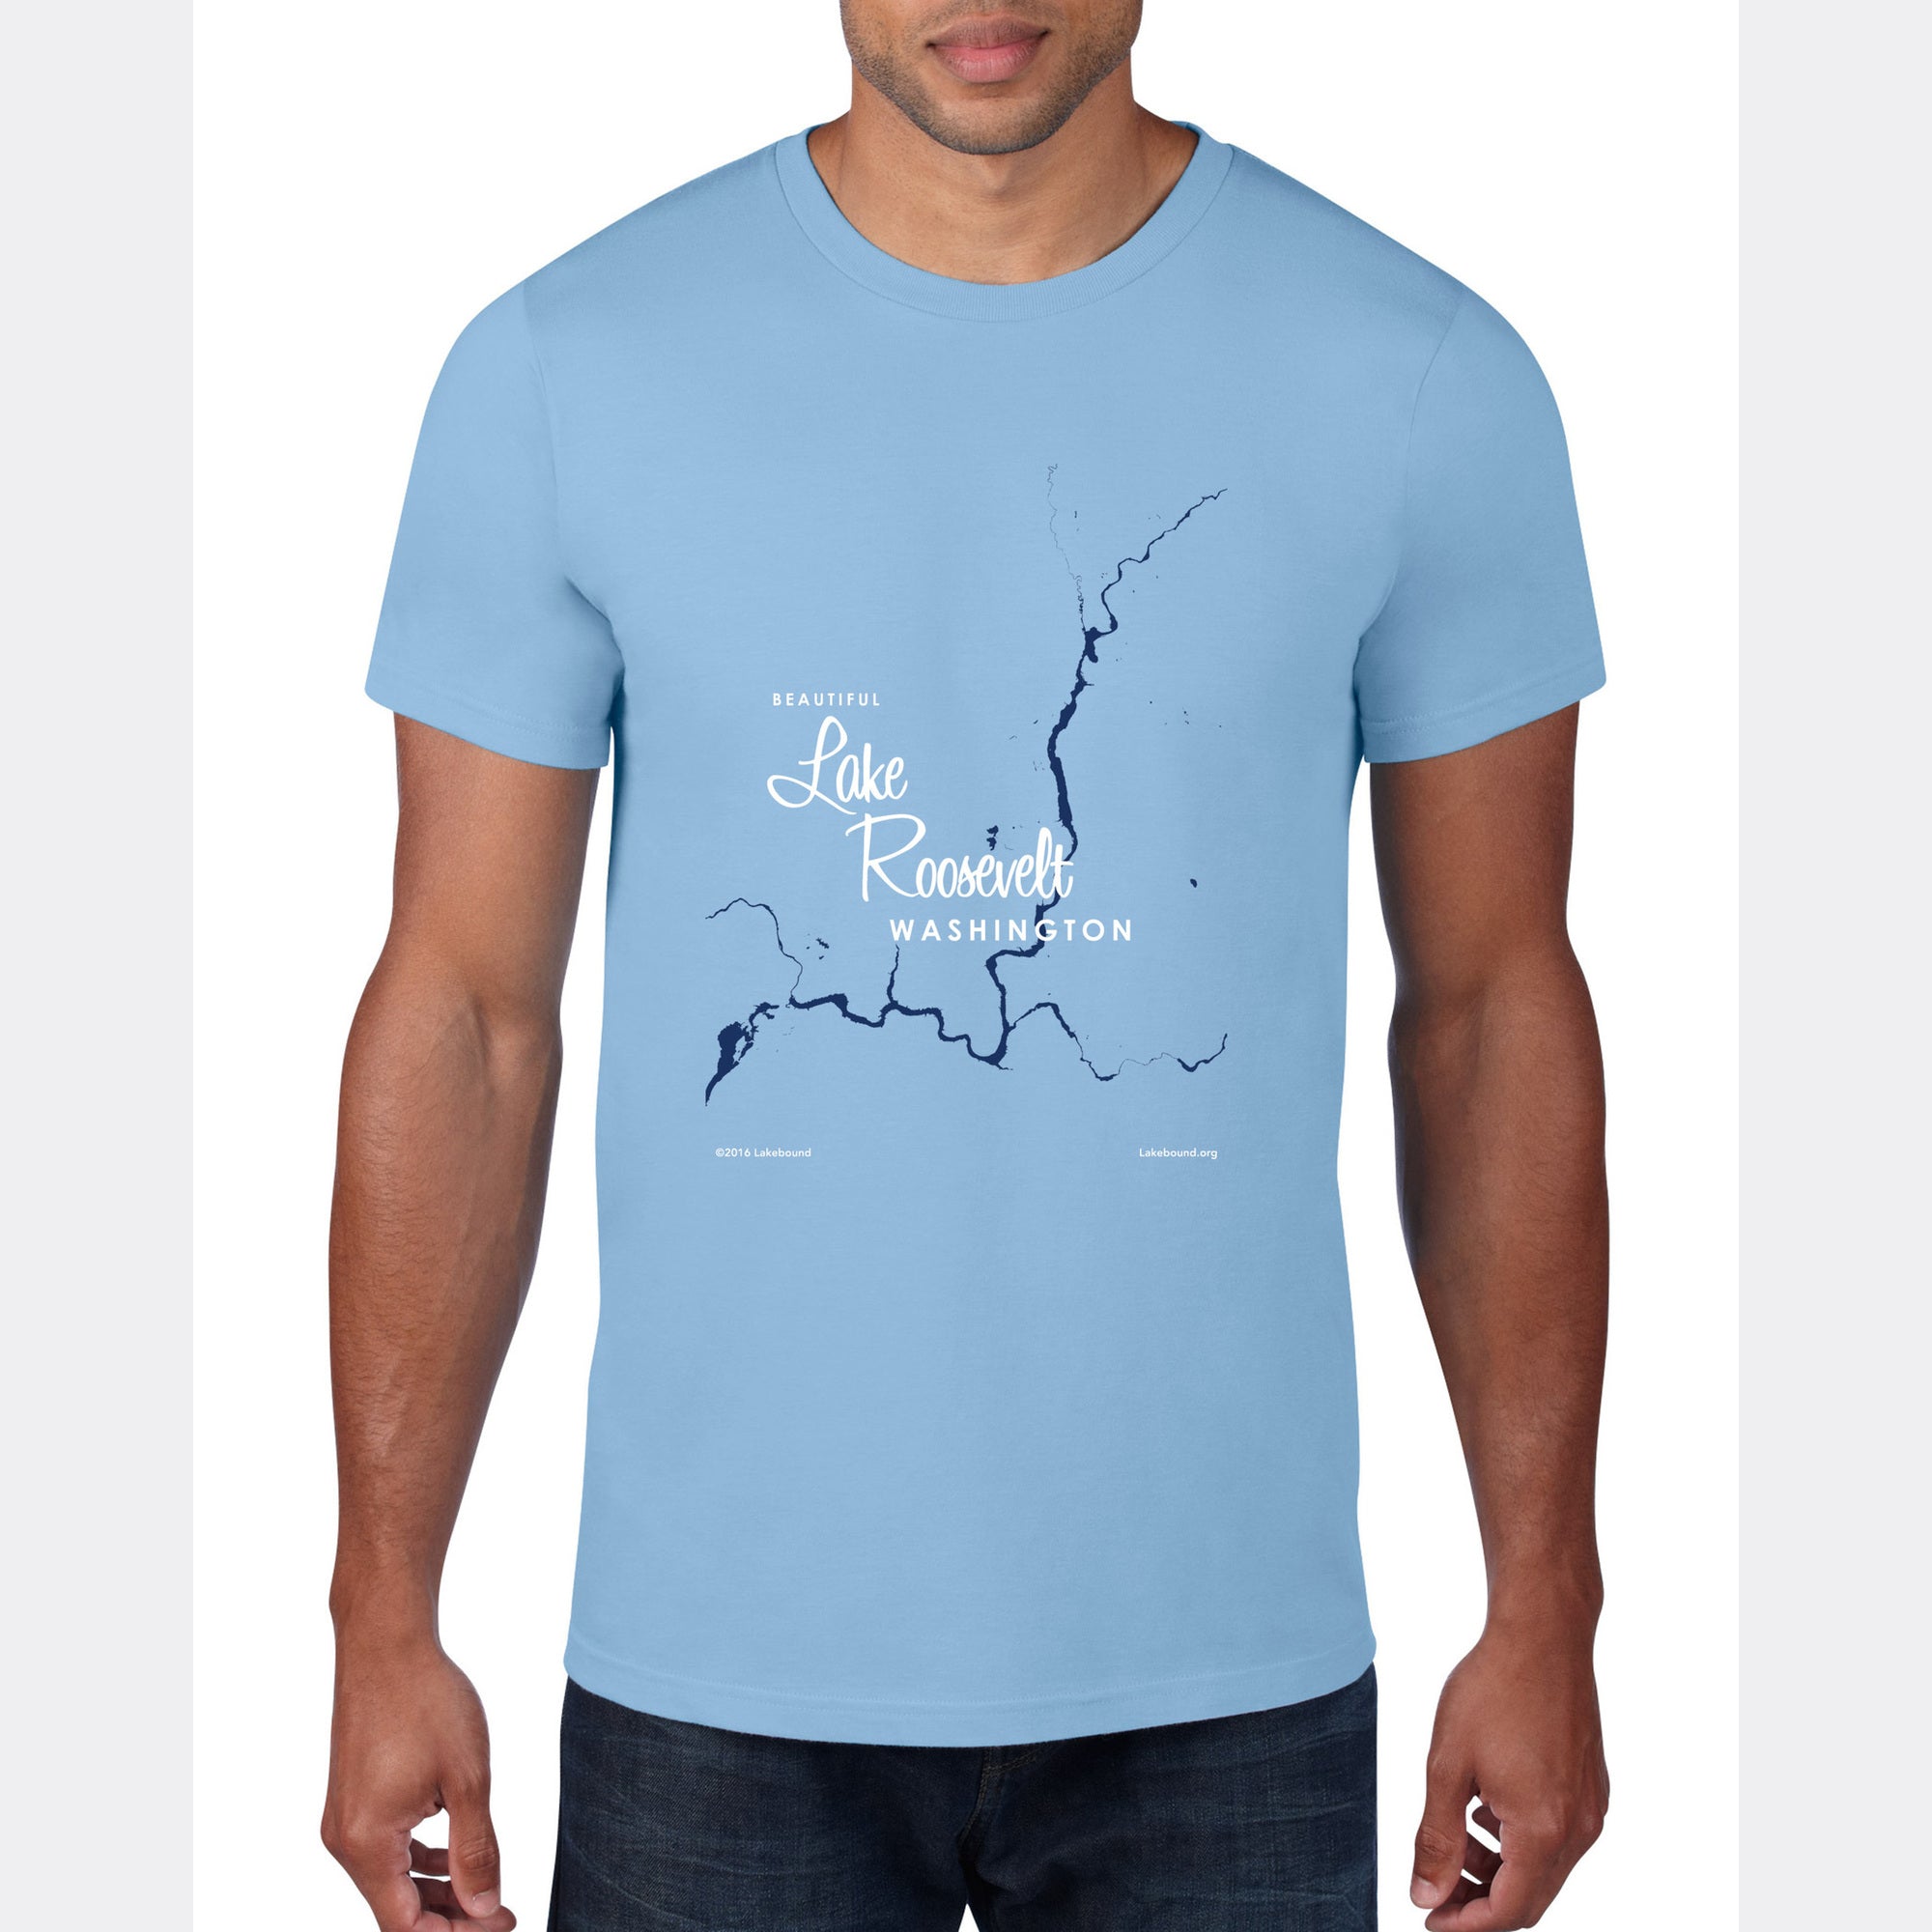 Lake Roosevelt Washington, T-Shirt